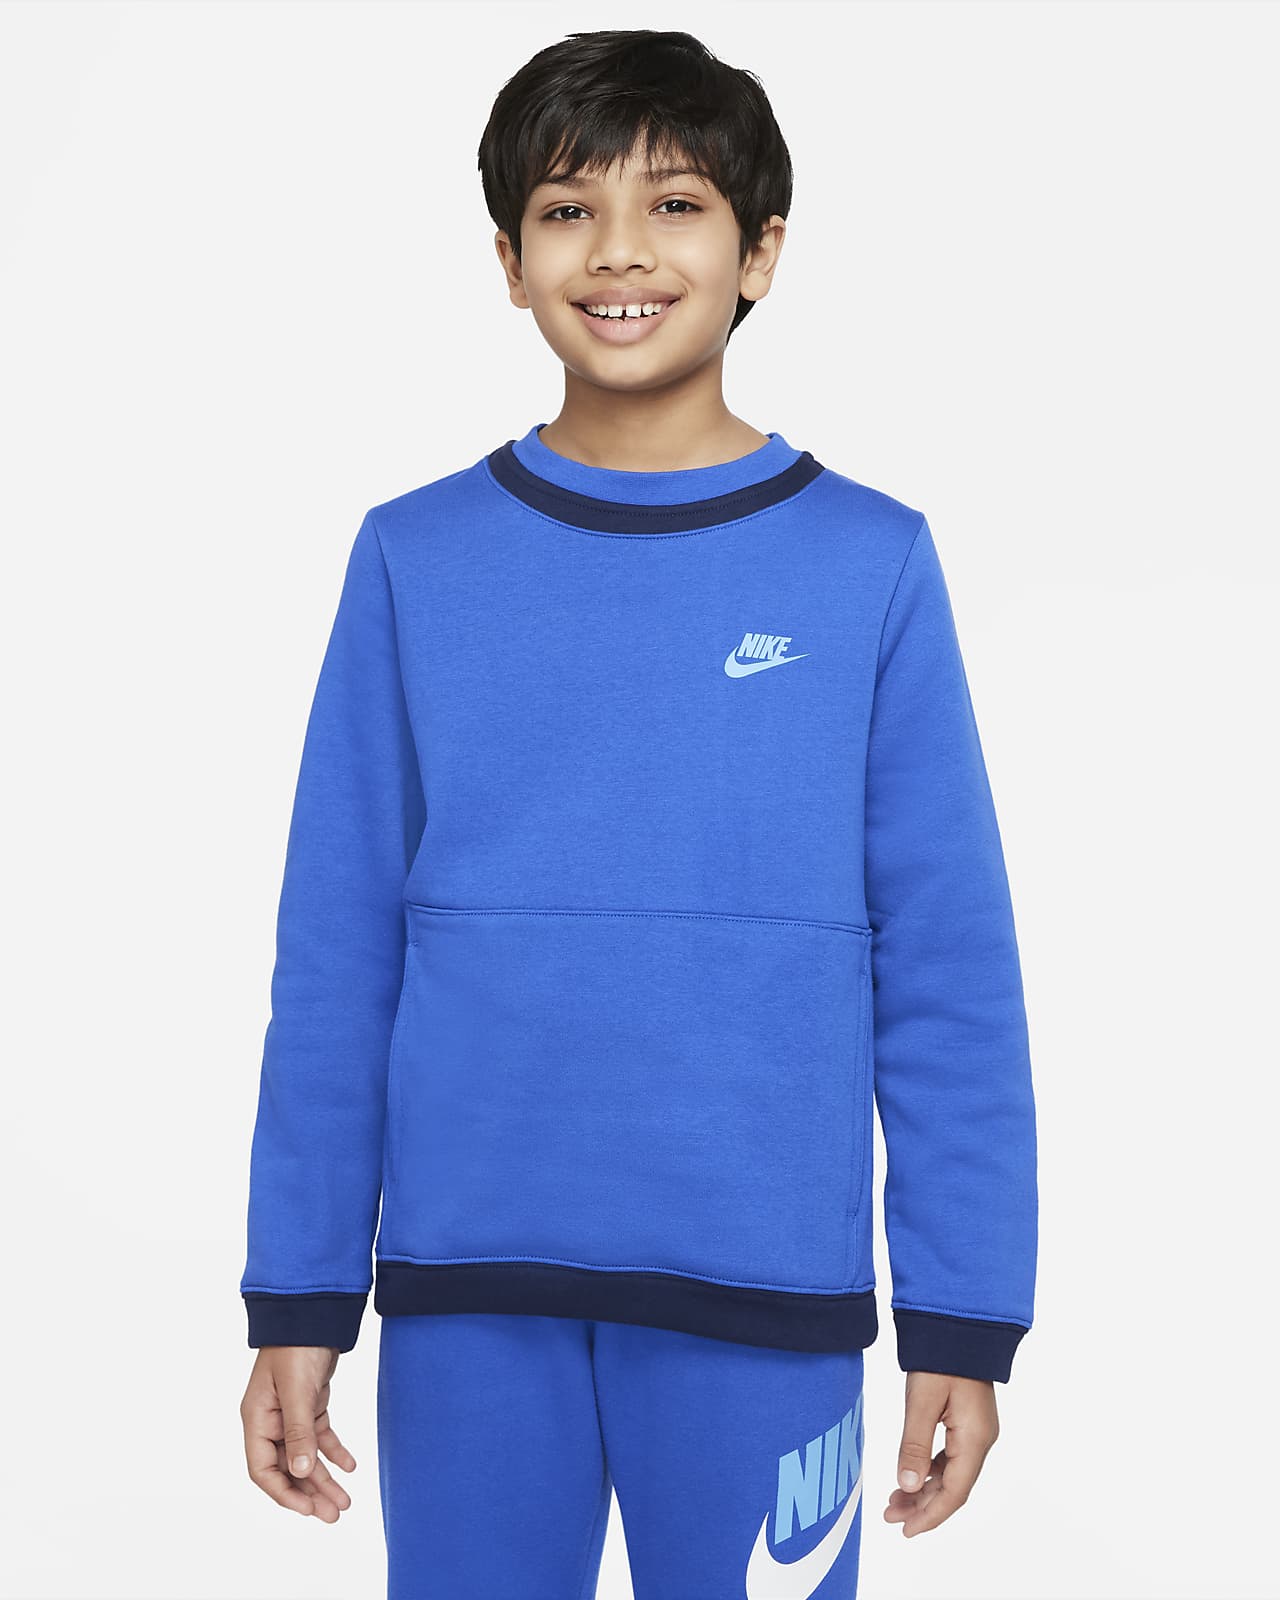 Nike Sportswear Amplify Big Kids' (Boys') Fleece Sweatshirt